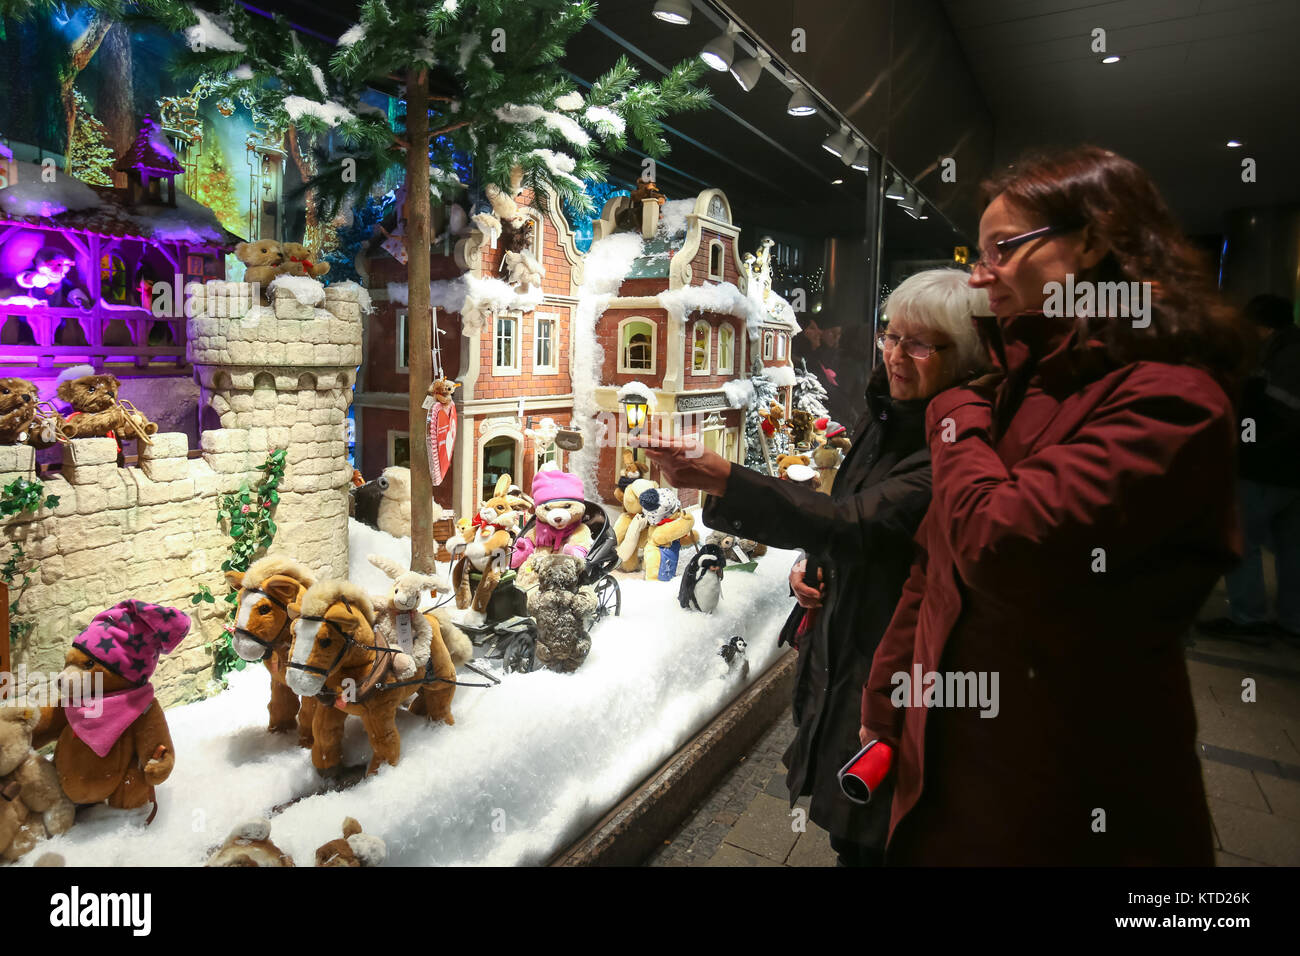 München, Deutschland - Dezember 11, 2017: Zwei Frauen Sehenswürdigkeiten  die Schaufenster der Galeria Kaufhof verziert mit Spielzeug im Winter Stil  in der Nacht in München, G Stockfotografie - Alamy